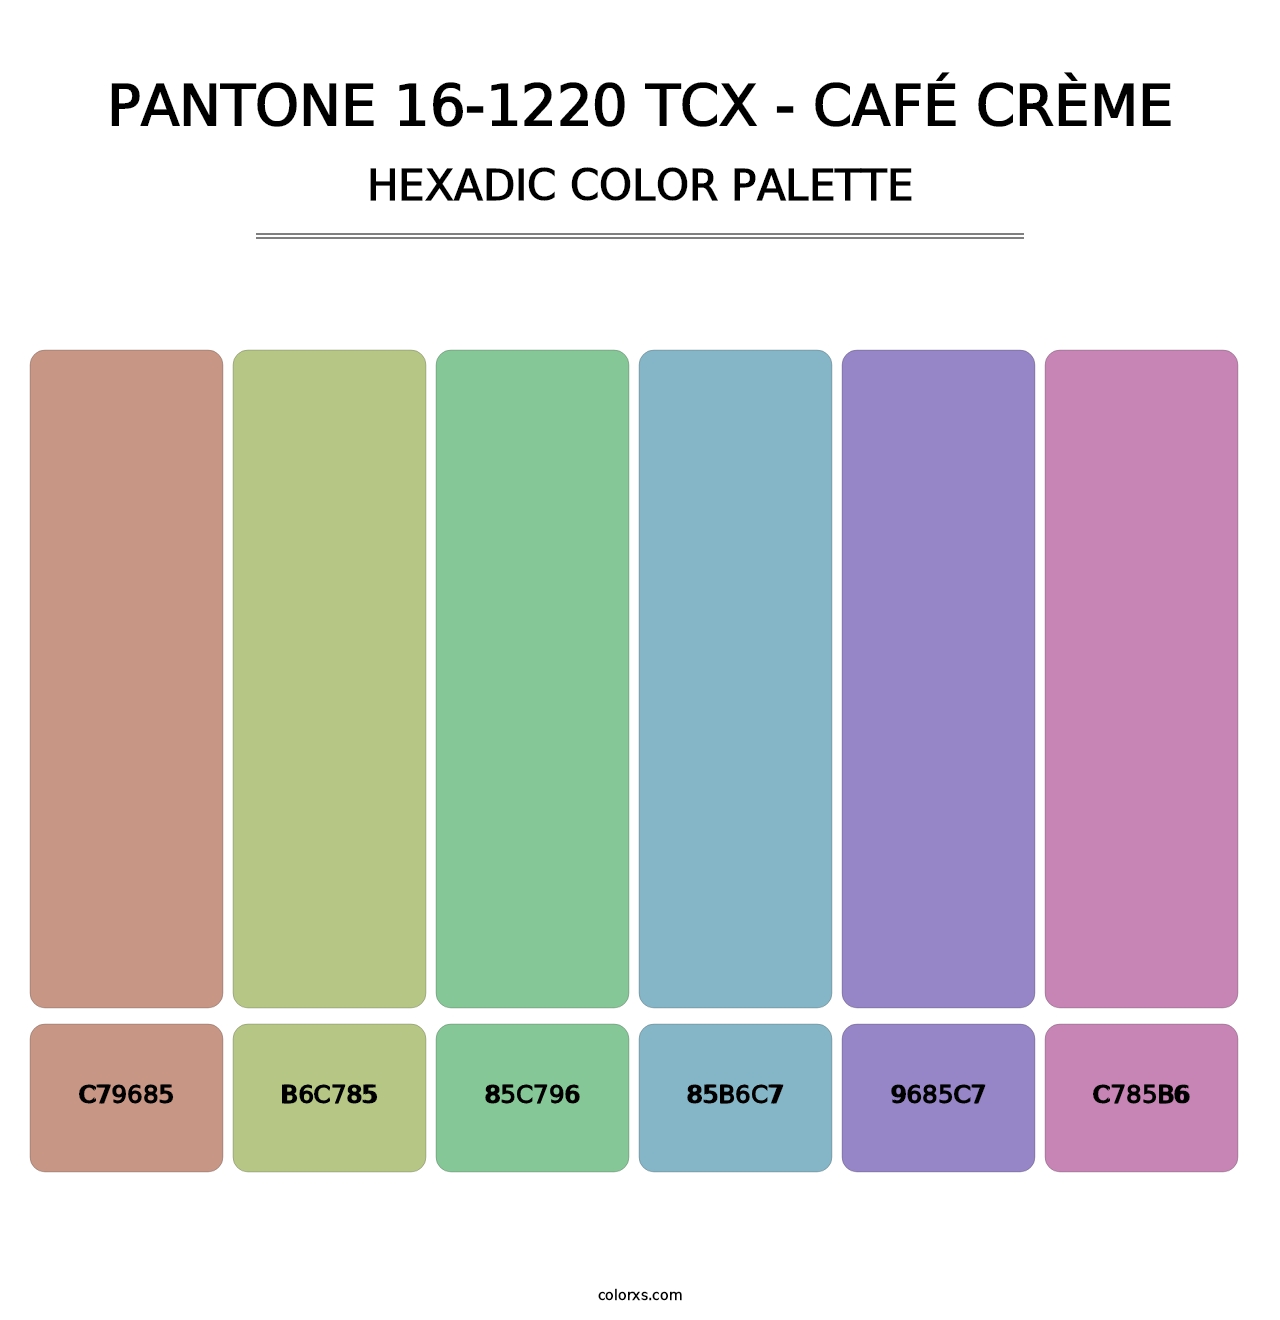 PANTONE 16-1220 TCX - Café Crème - Hexadic Color Palette